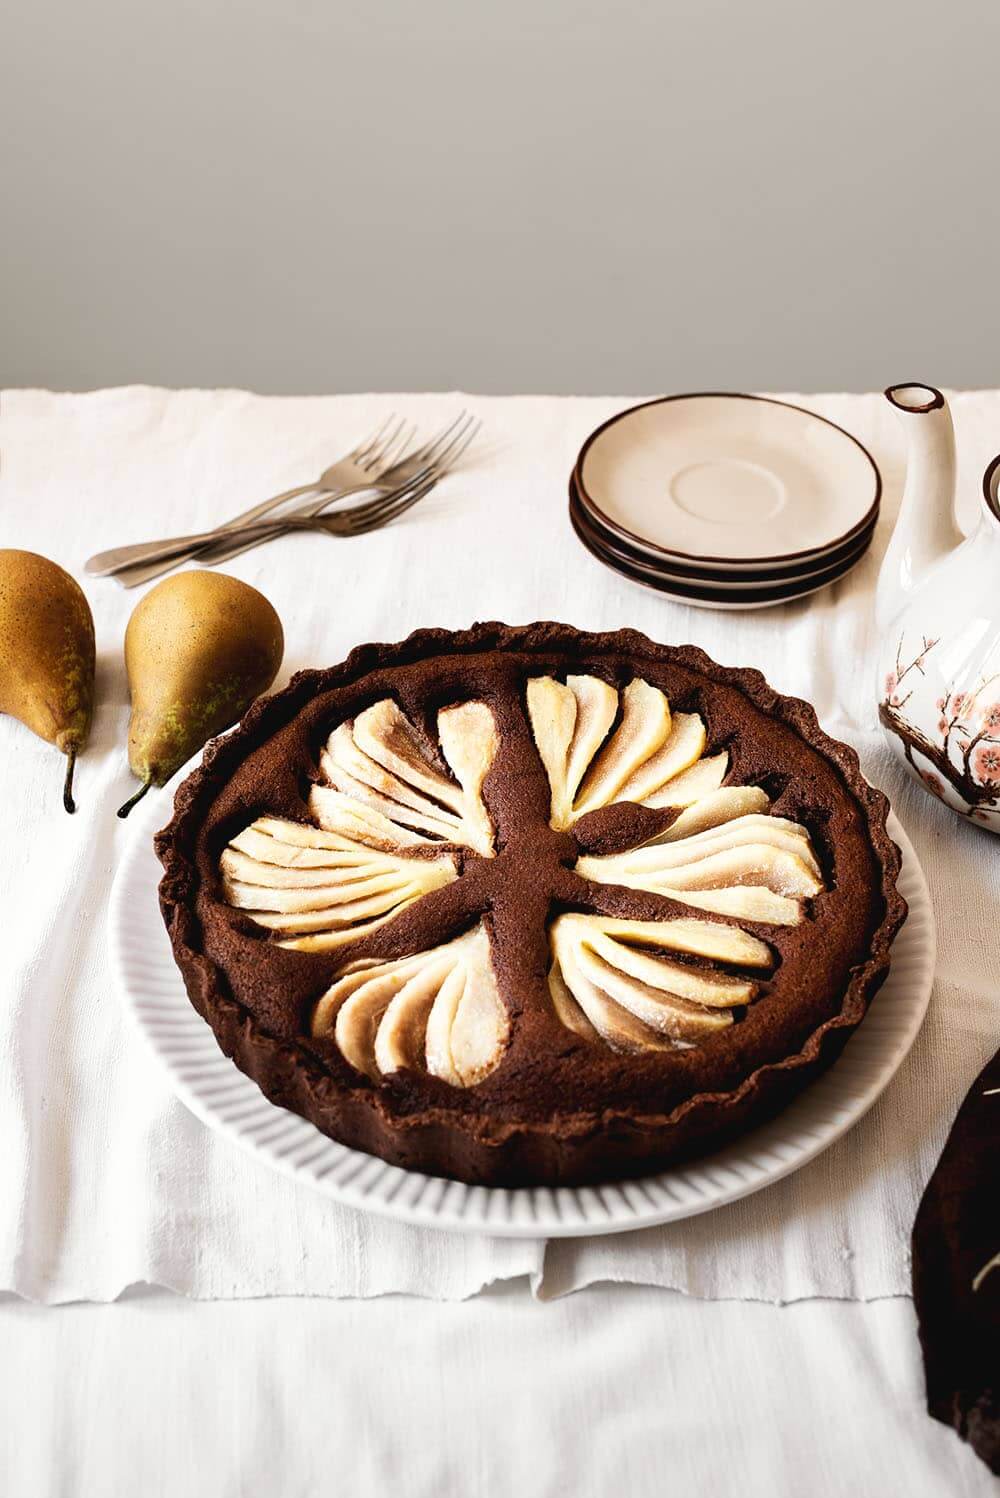 En una mesa está un mantel blanco. En una fuente grande y blanca está la tarta de peras con chocolate. En la mesa hay una tetera, platos pequeños, cubiertos también.